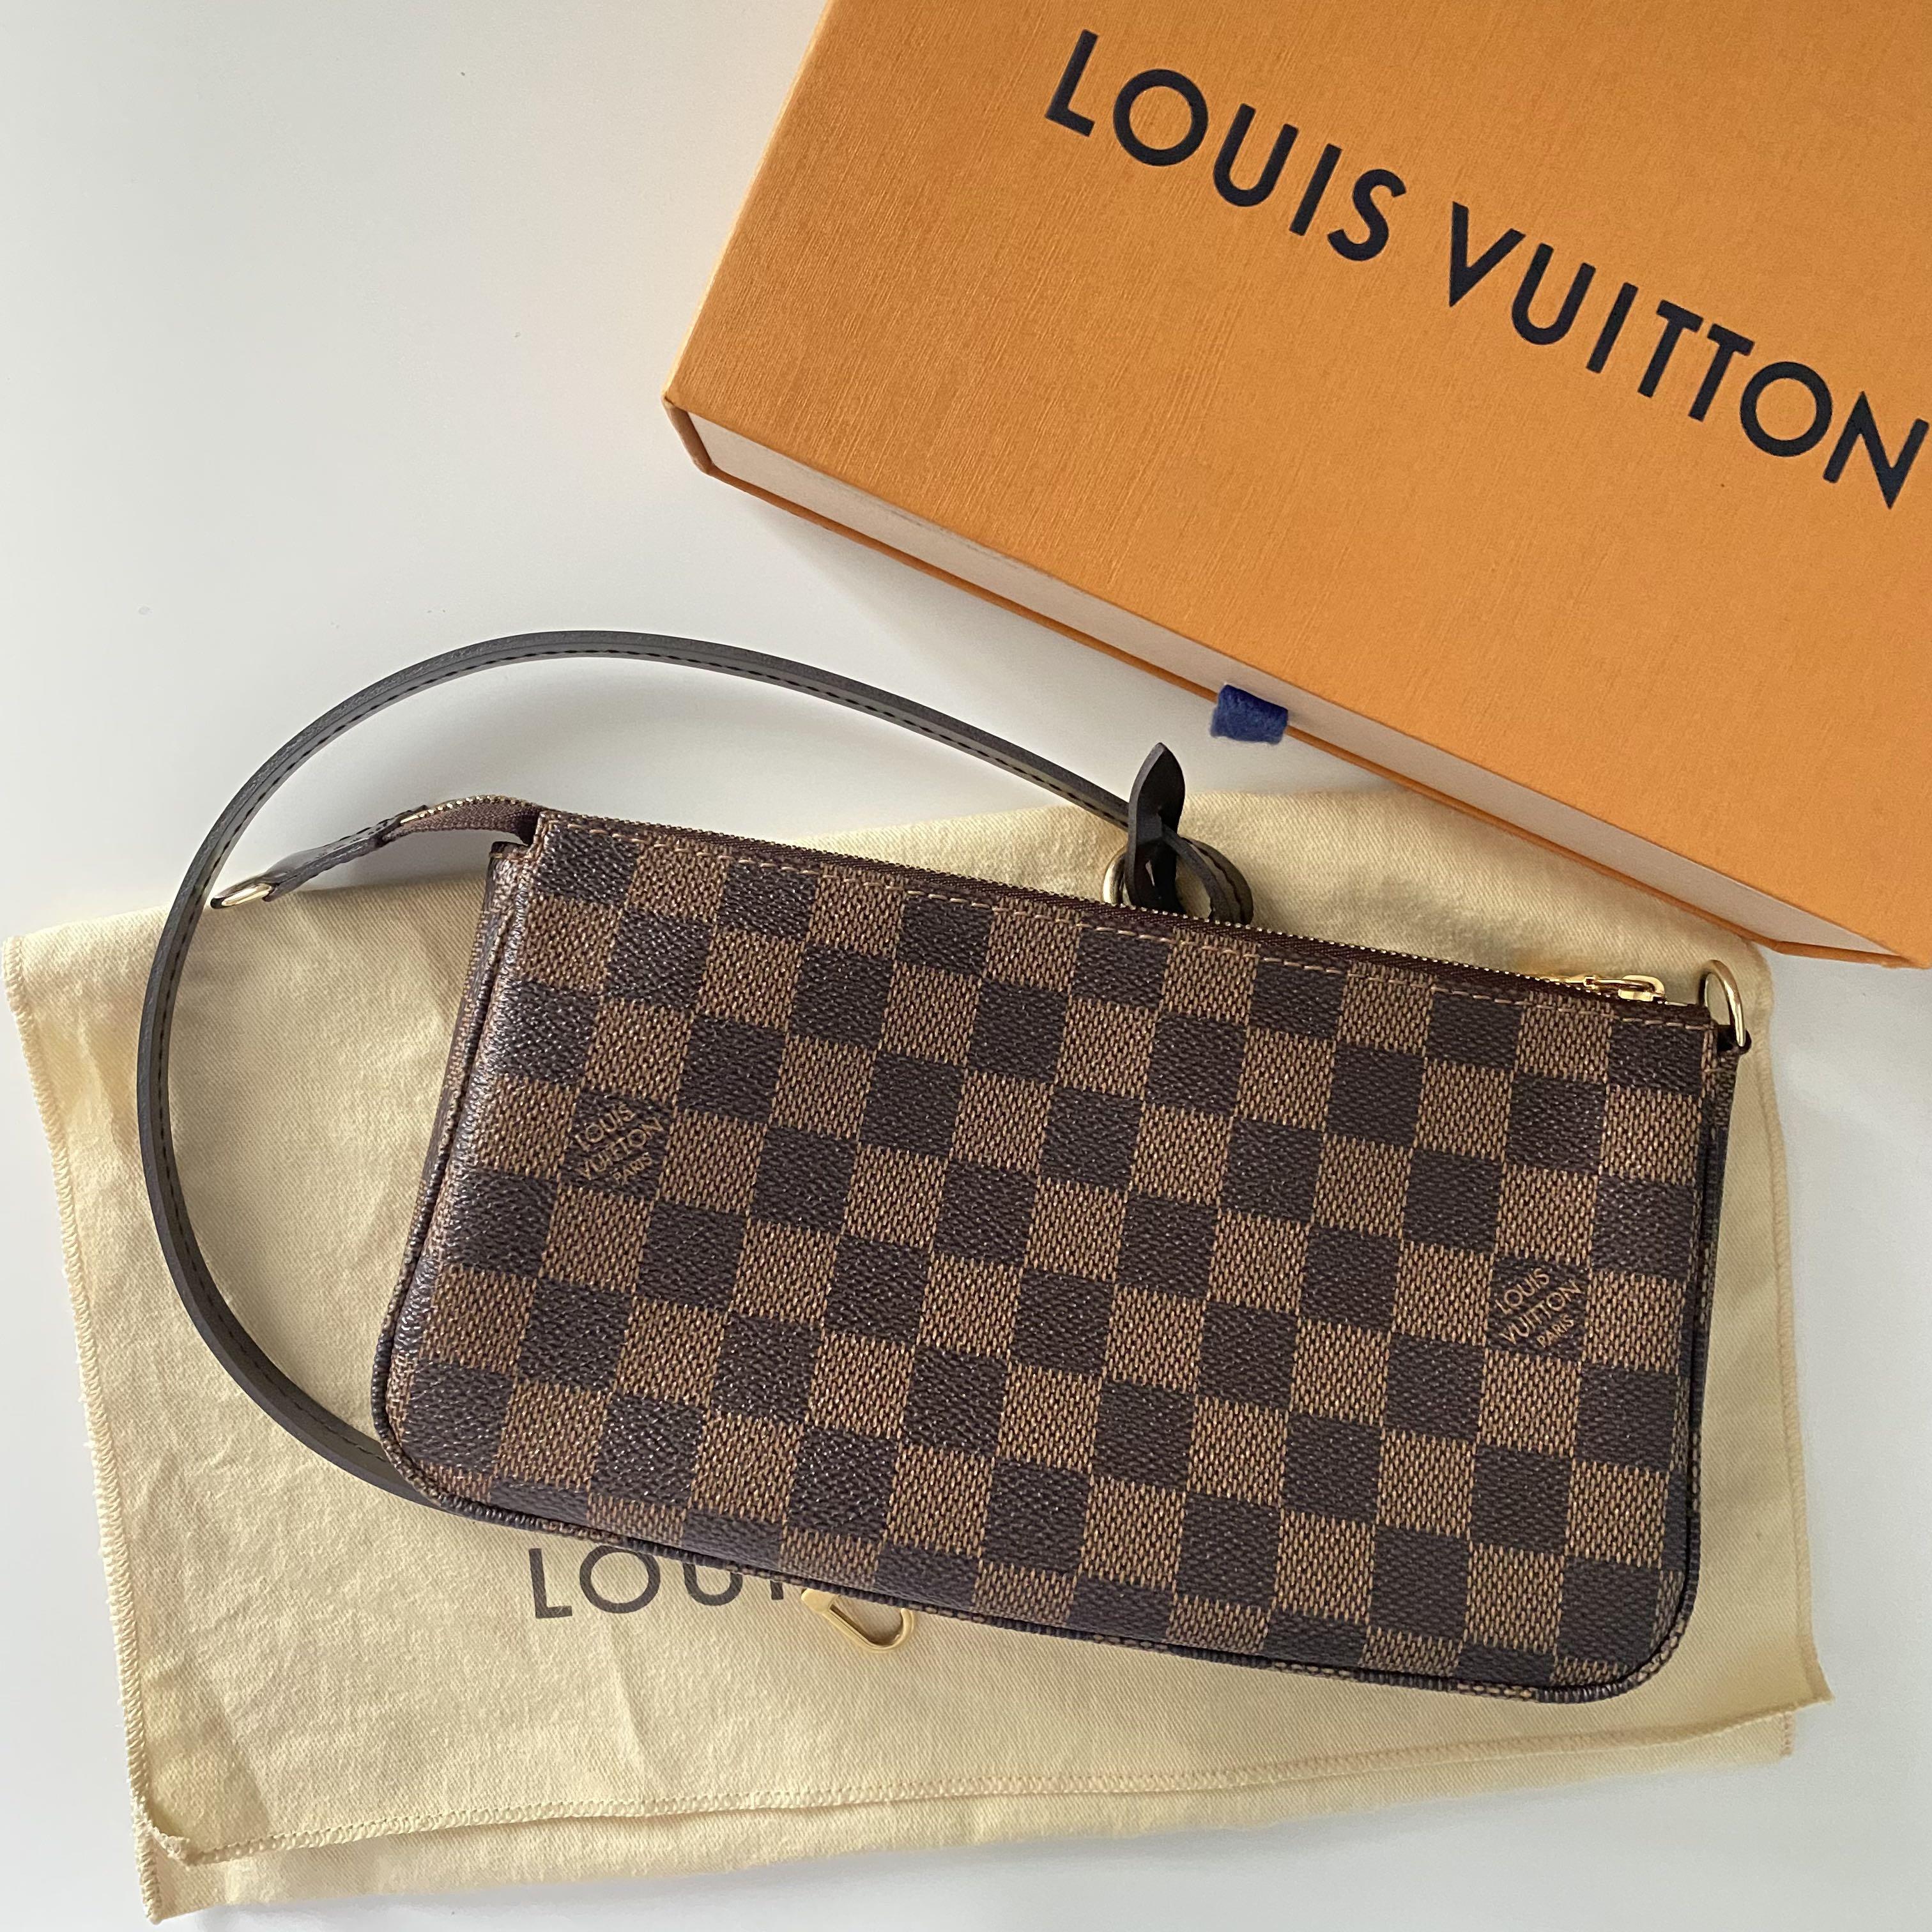 Louis Vuitton Pochettes for sale in Quezon City, Philippines